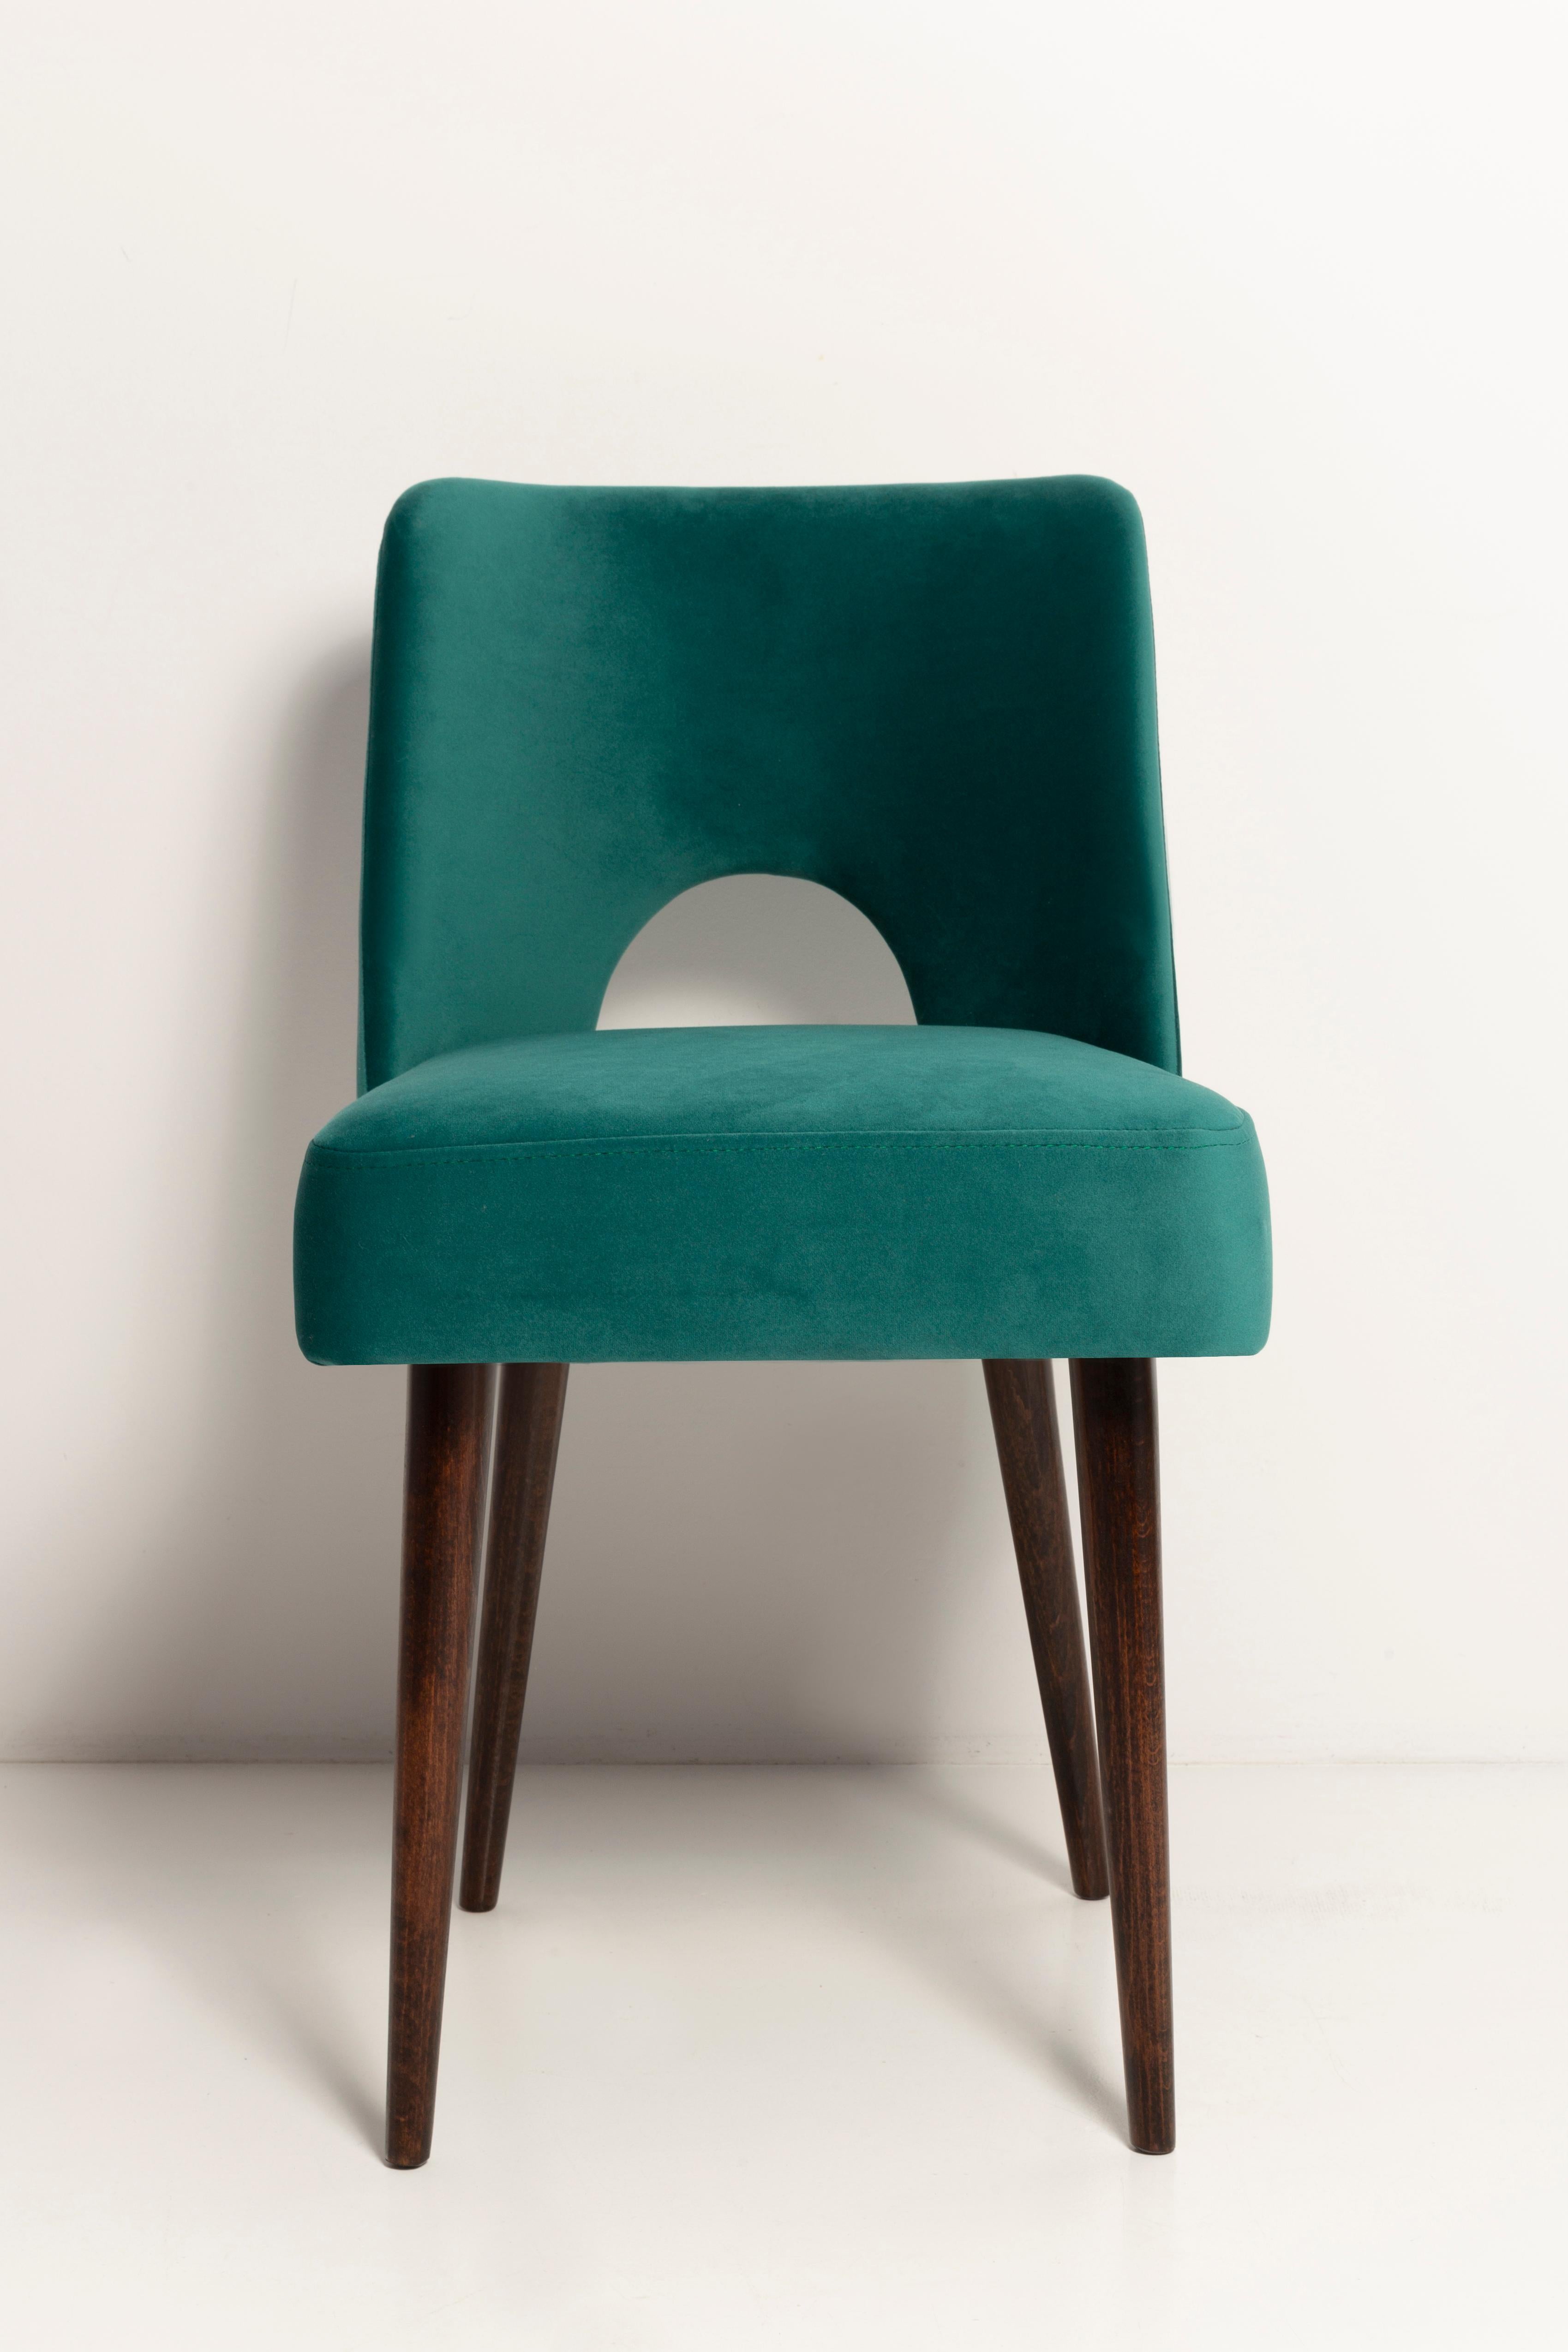 Dark Green Velvet 'Shell' Chair, Europe, 1960s For Sale 1